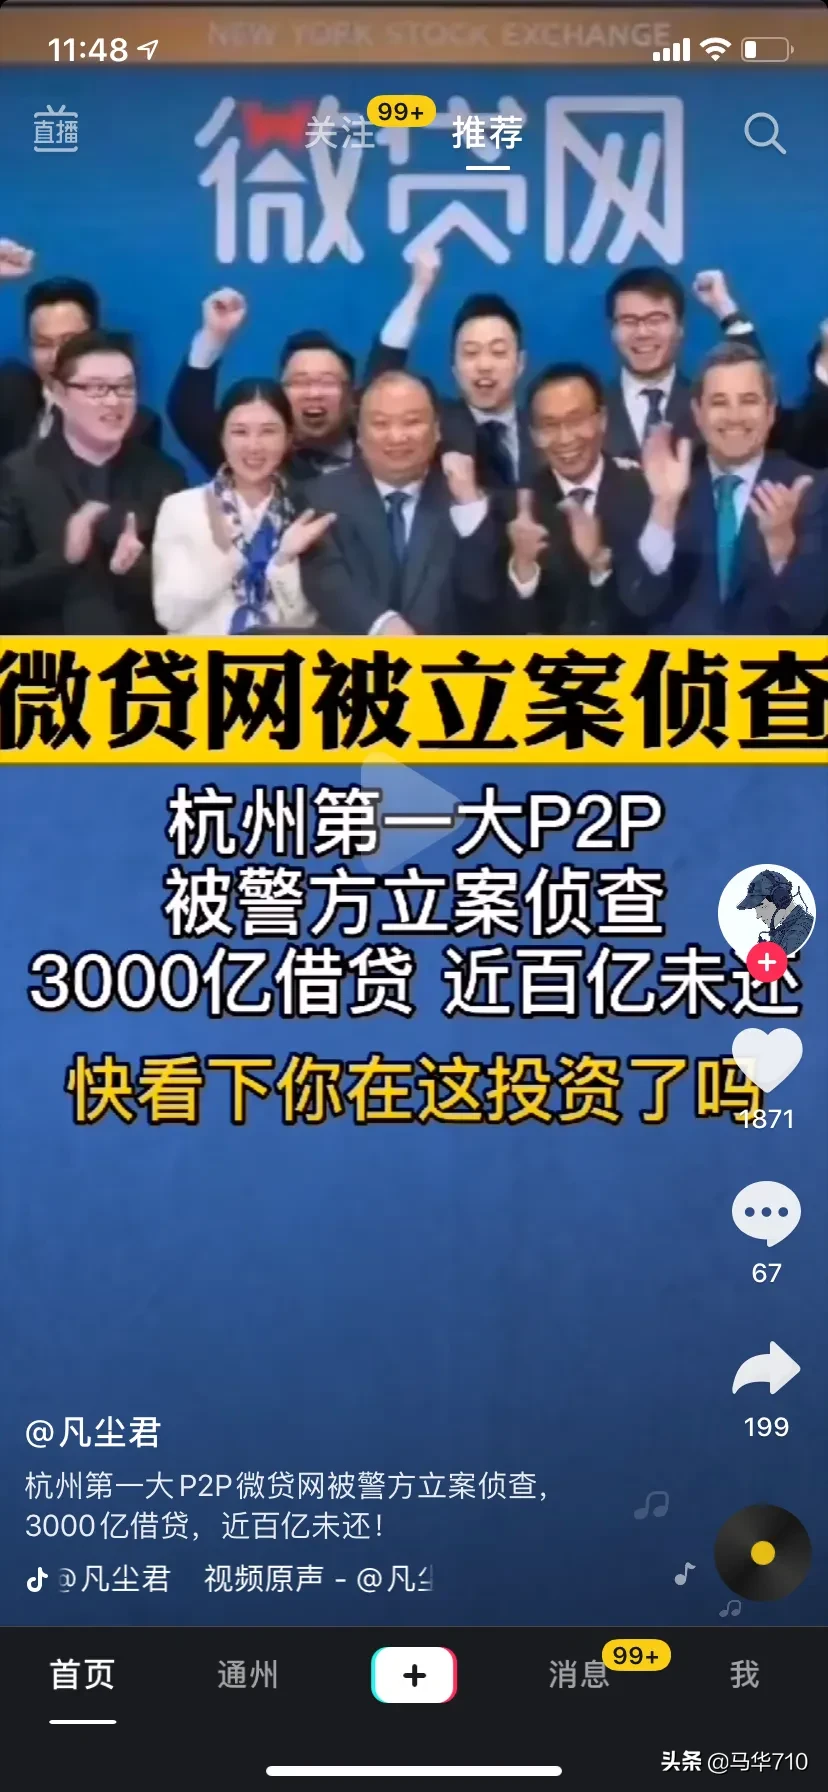 杭州第一大P2P公司以涉嫌非法吸收公众存款罪立案侦查